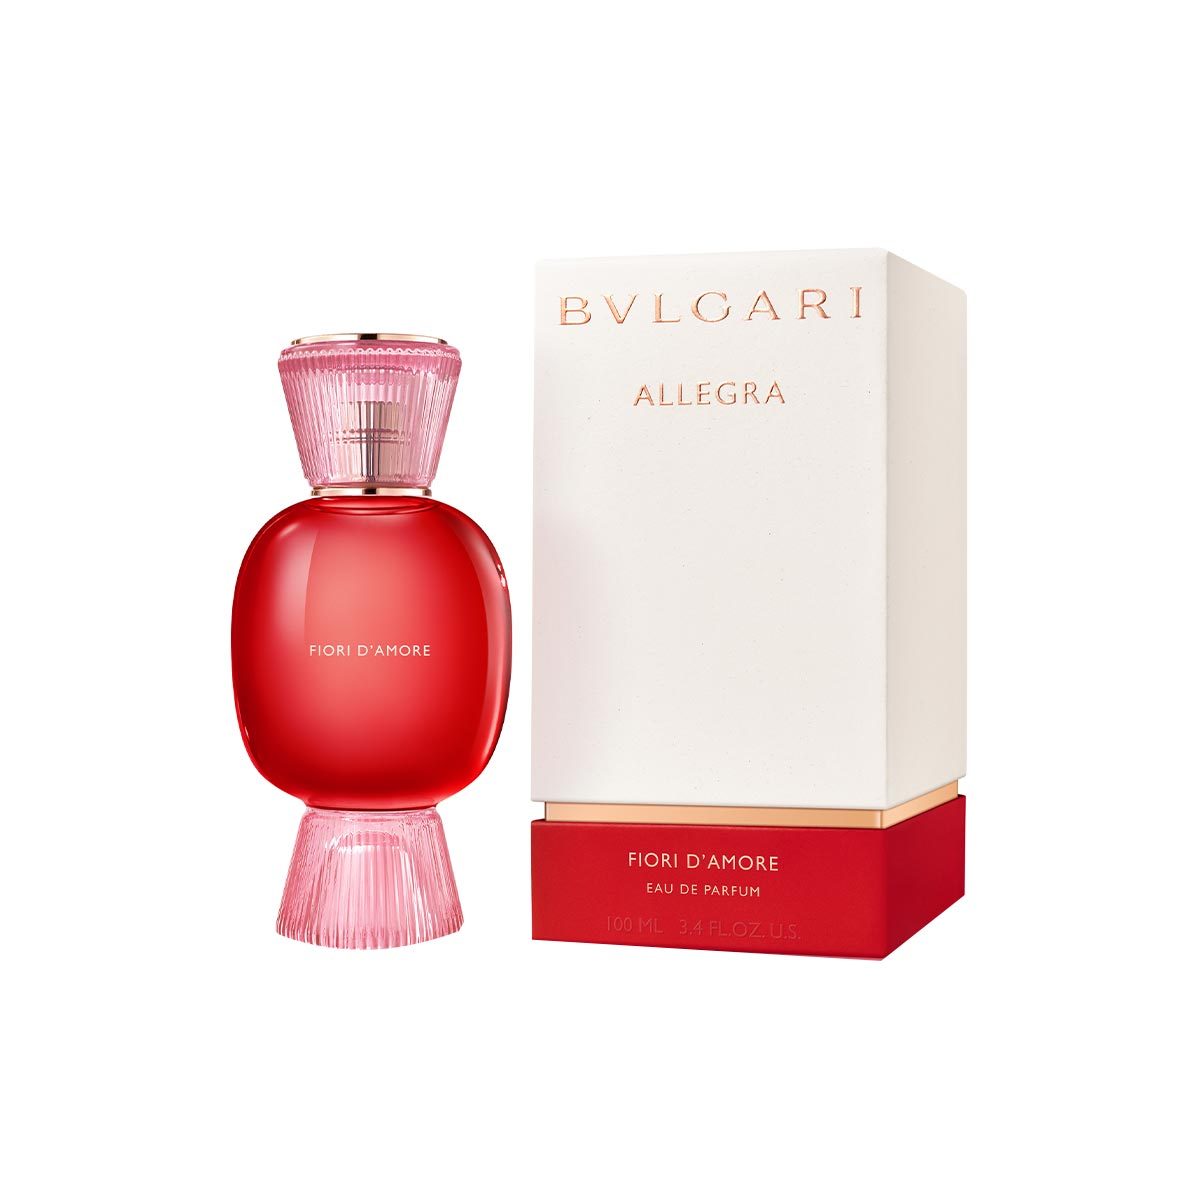 BVLGARI Allegra Fiori D'Amore Eau De Parfum | escentials.com